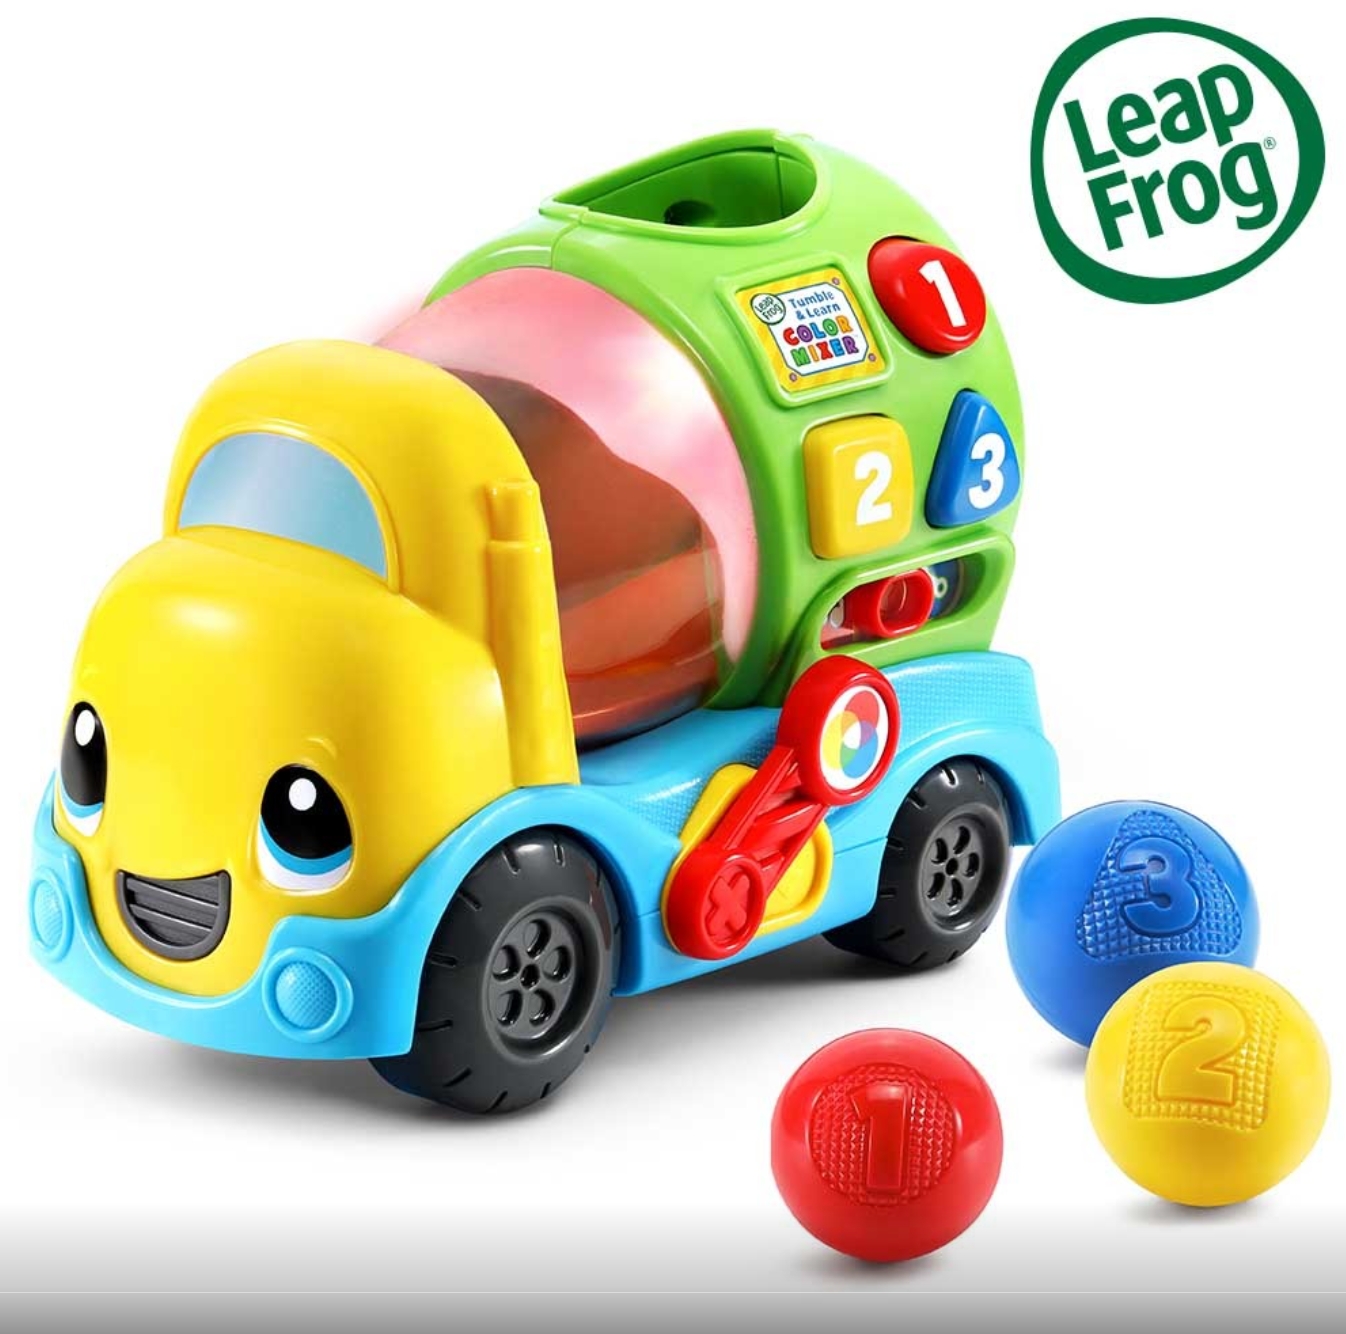 親子育兒｜美國LeapFrog跳跳蛙 中英文學習互動玩具 讓孩子邊玩邊學習英文！ - 奇奇一起玩樂趣